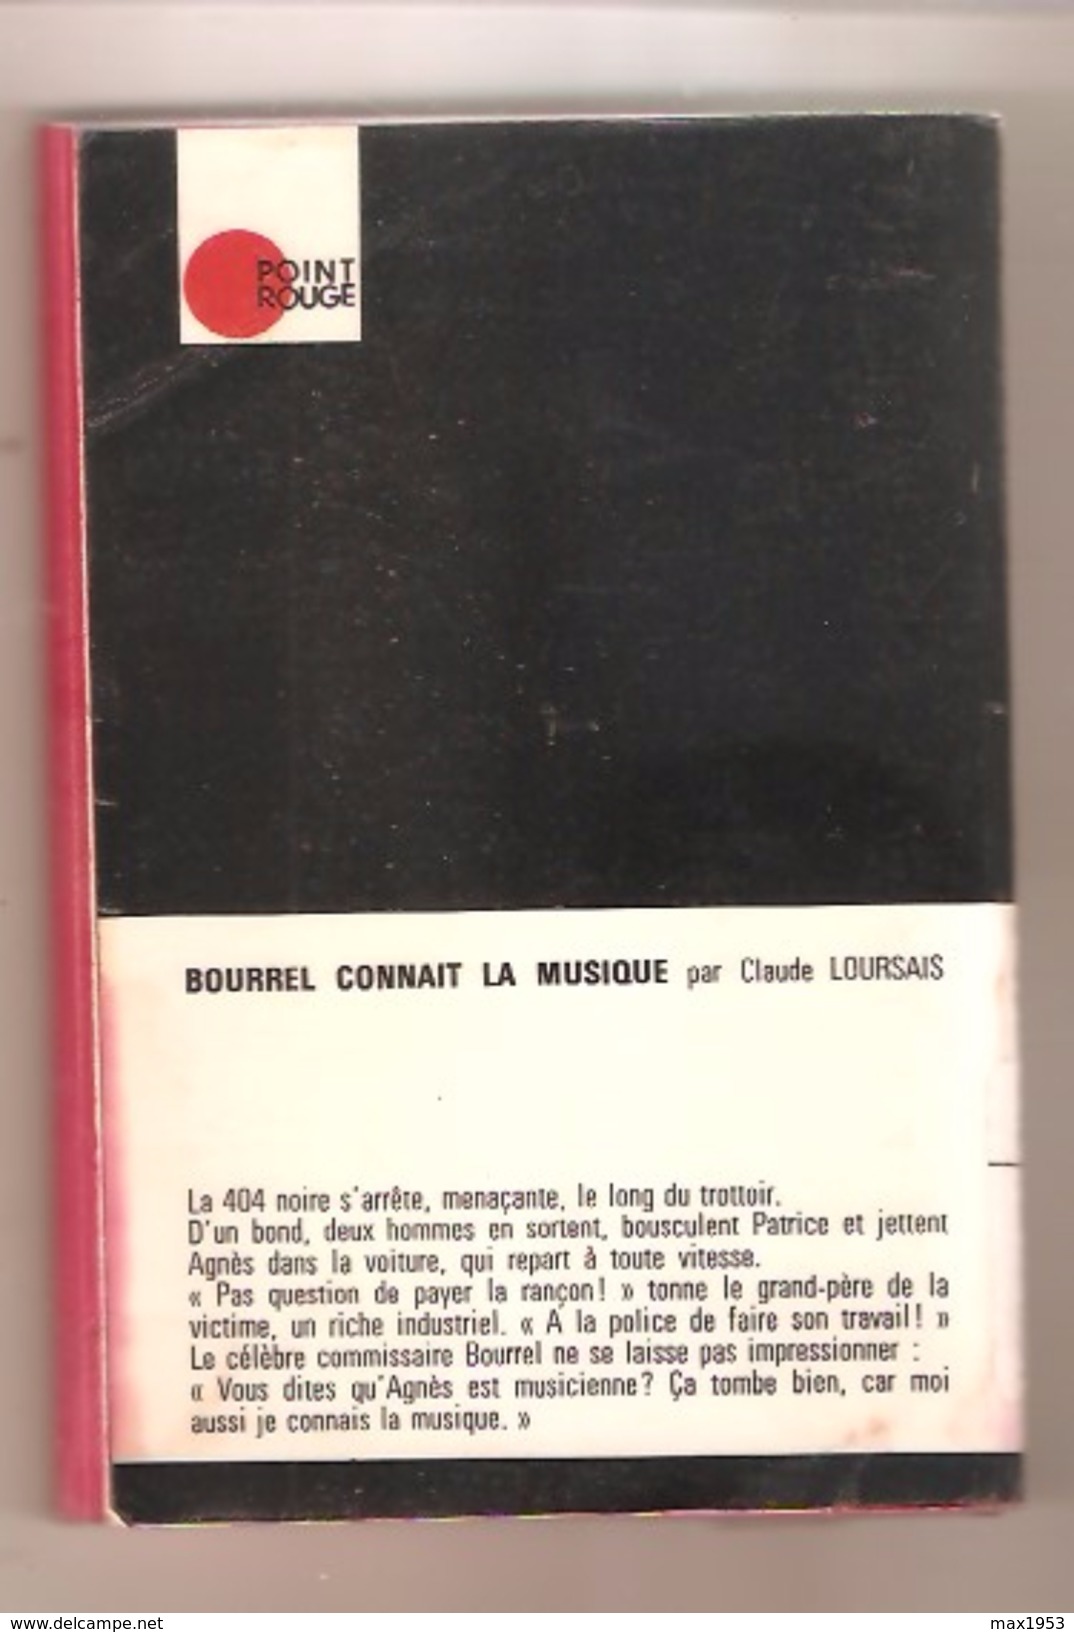 Claude Loursais- BOURREL Connaît La Musique - Collection: Point Rouge N° 8 - 1972 - Hachette - Point Rouge